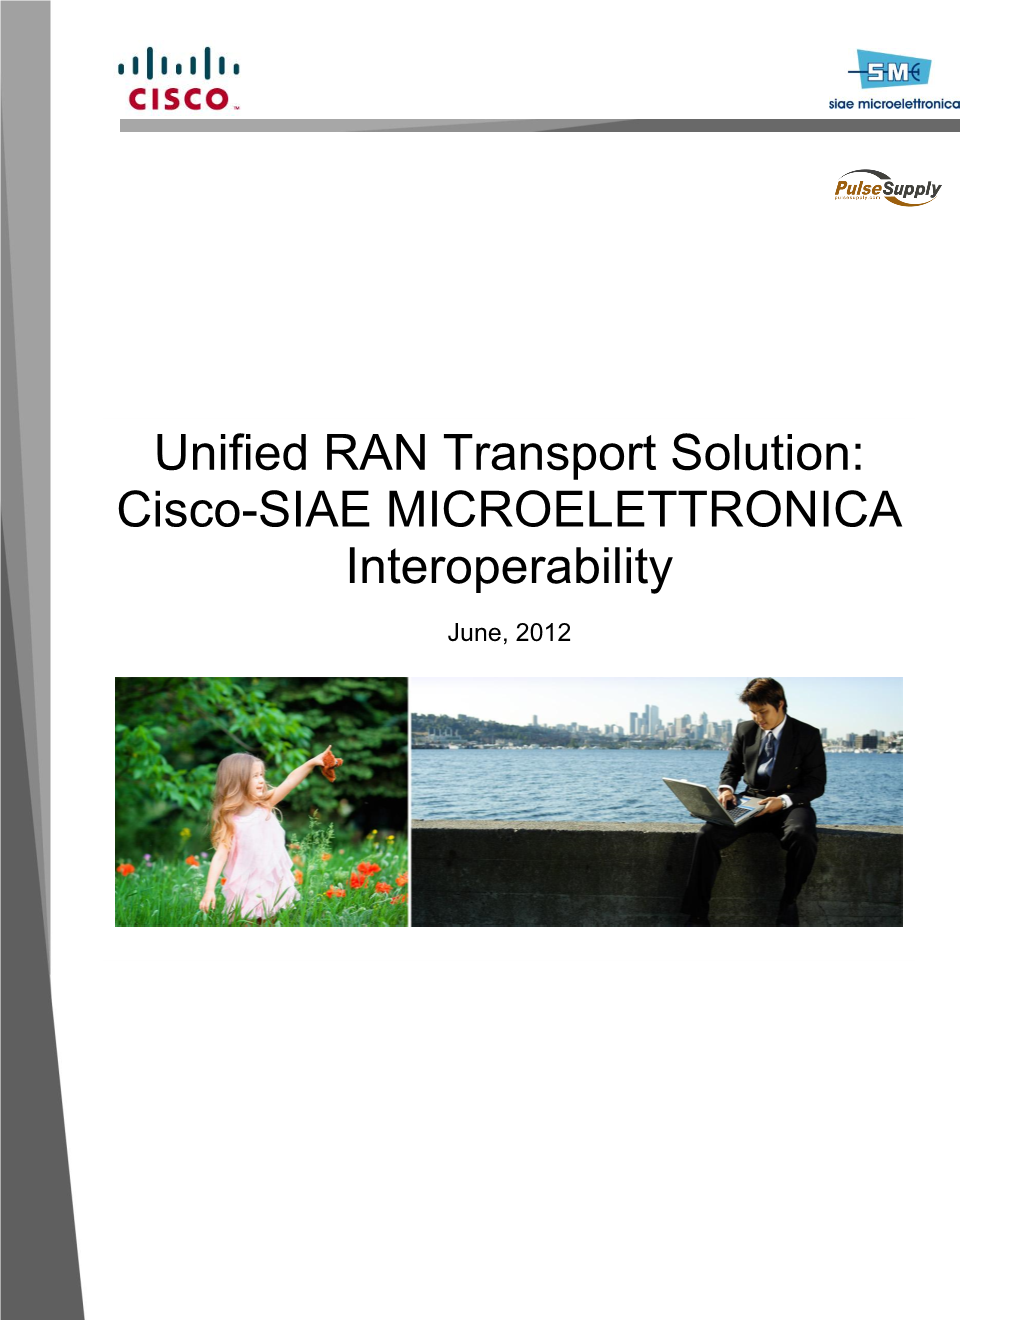 Cisco-SIAE MICROELETTRONICA Interoperability